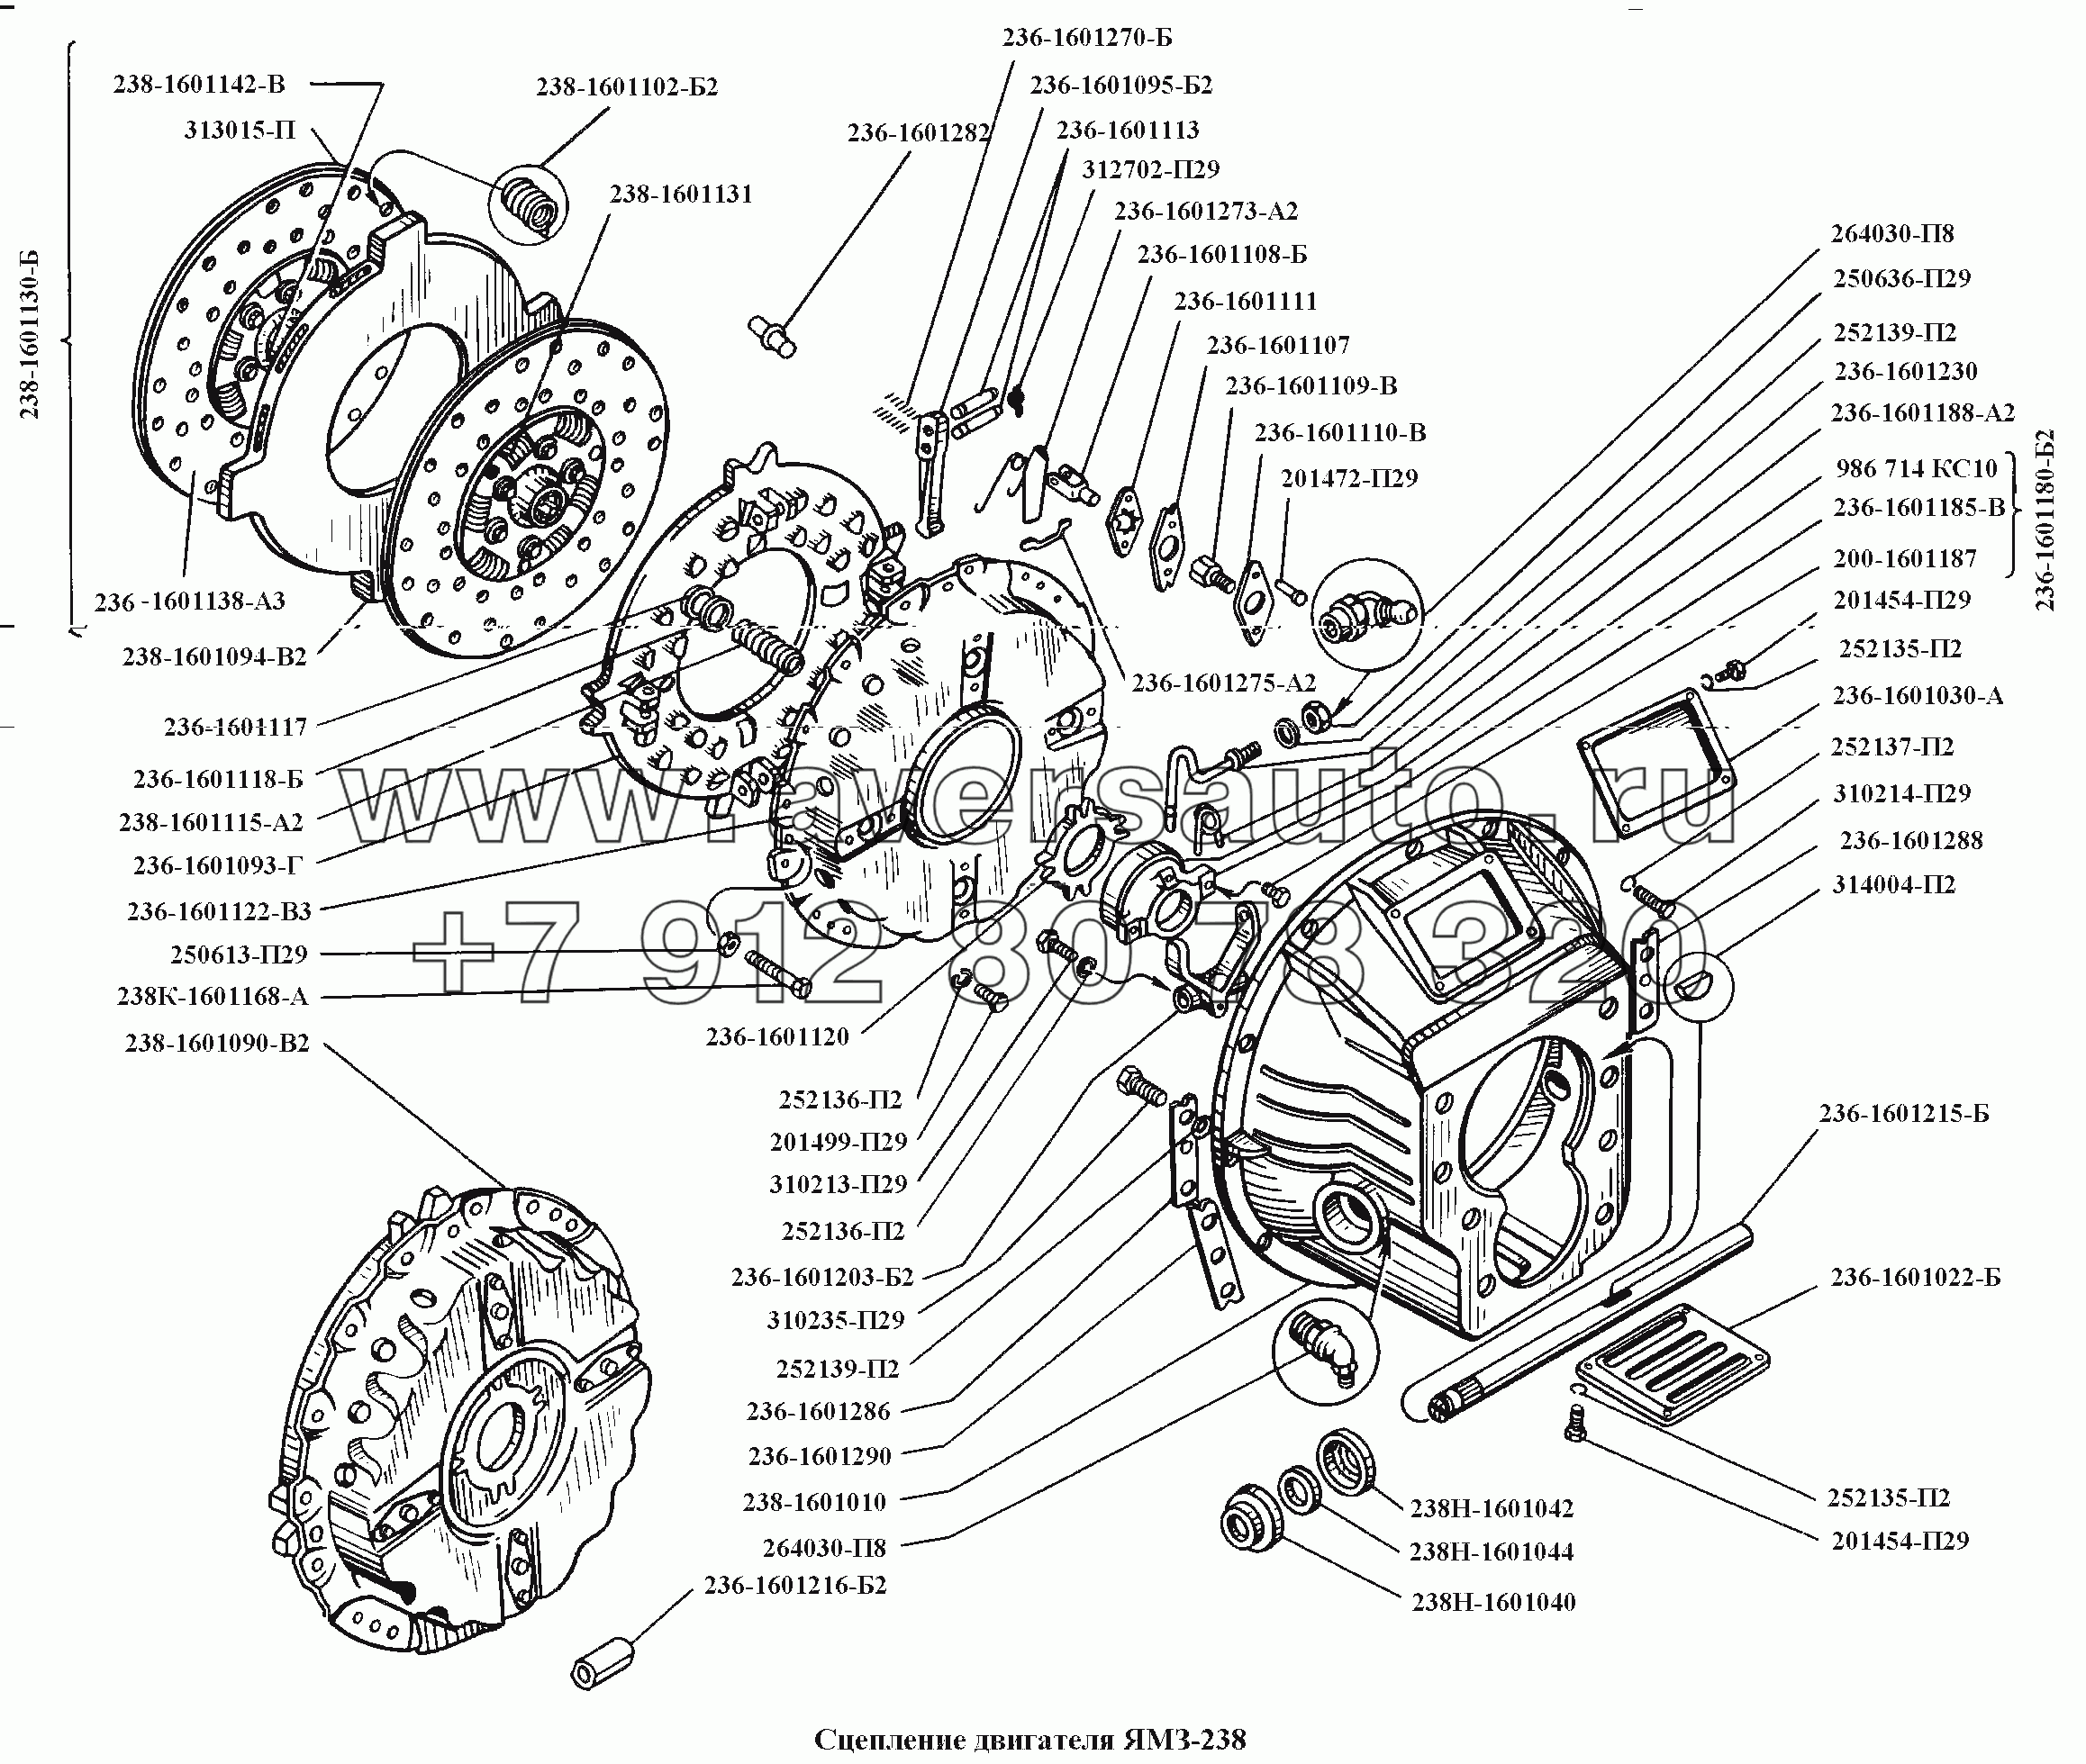 Сцепление двигателя ЯМЗ-238